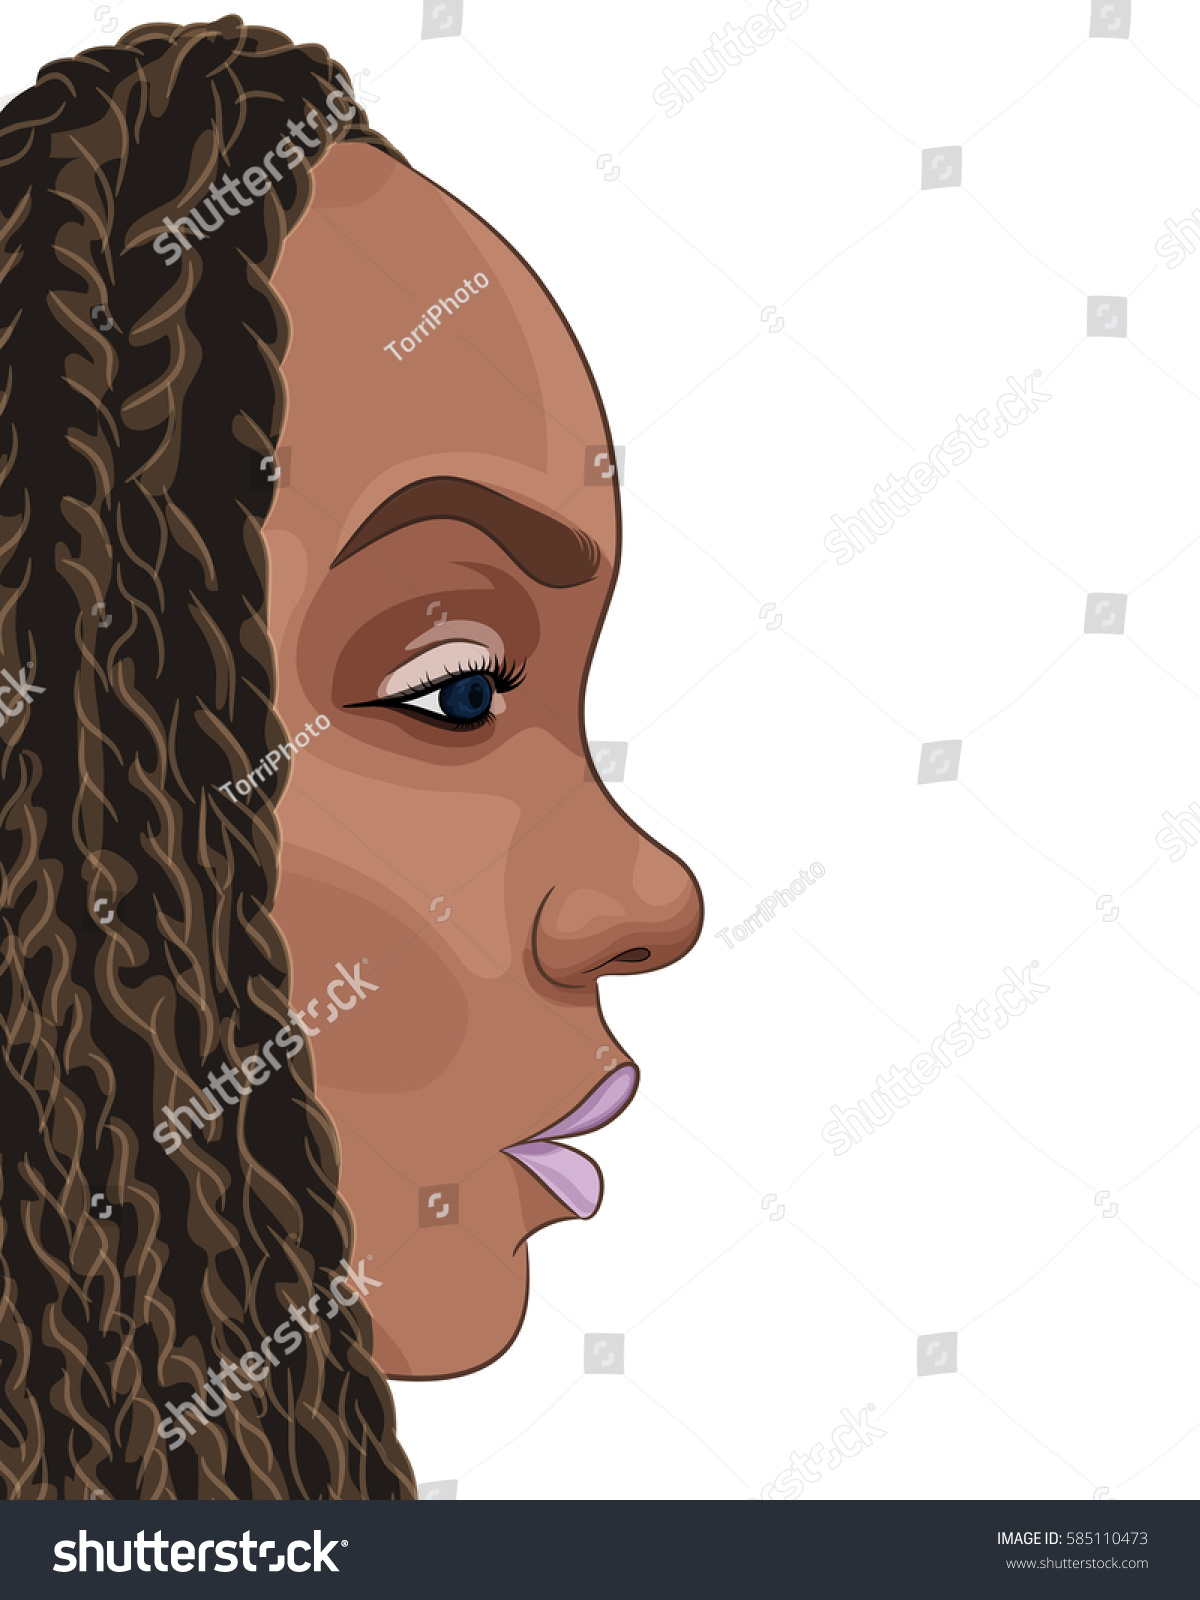 https://www.shutterstock.com/image-vector/cartoon-portrait-young-african-girl-vector-585110473